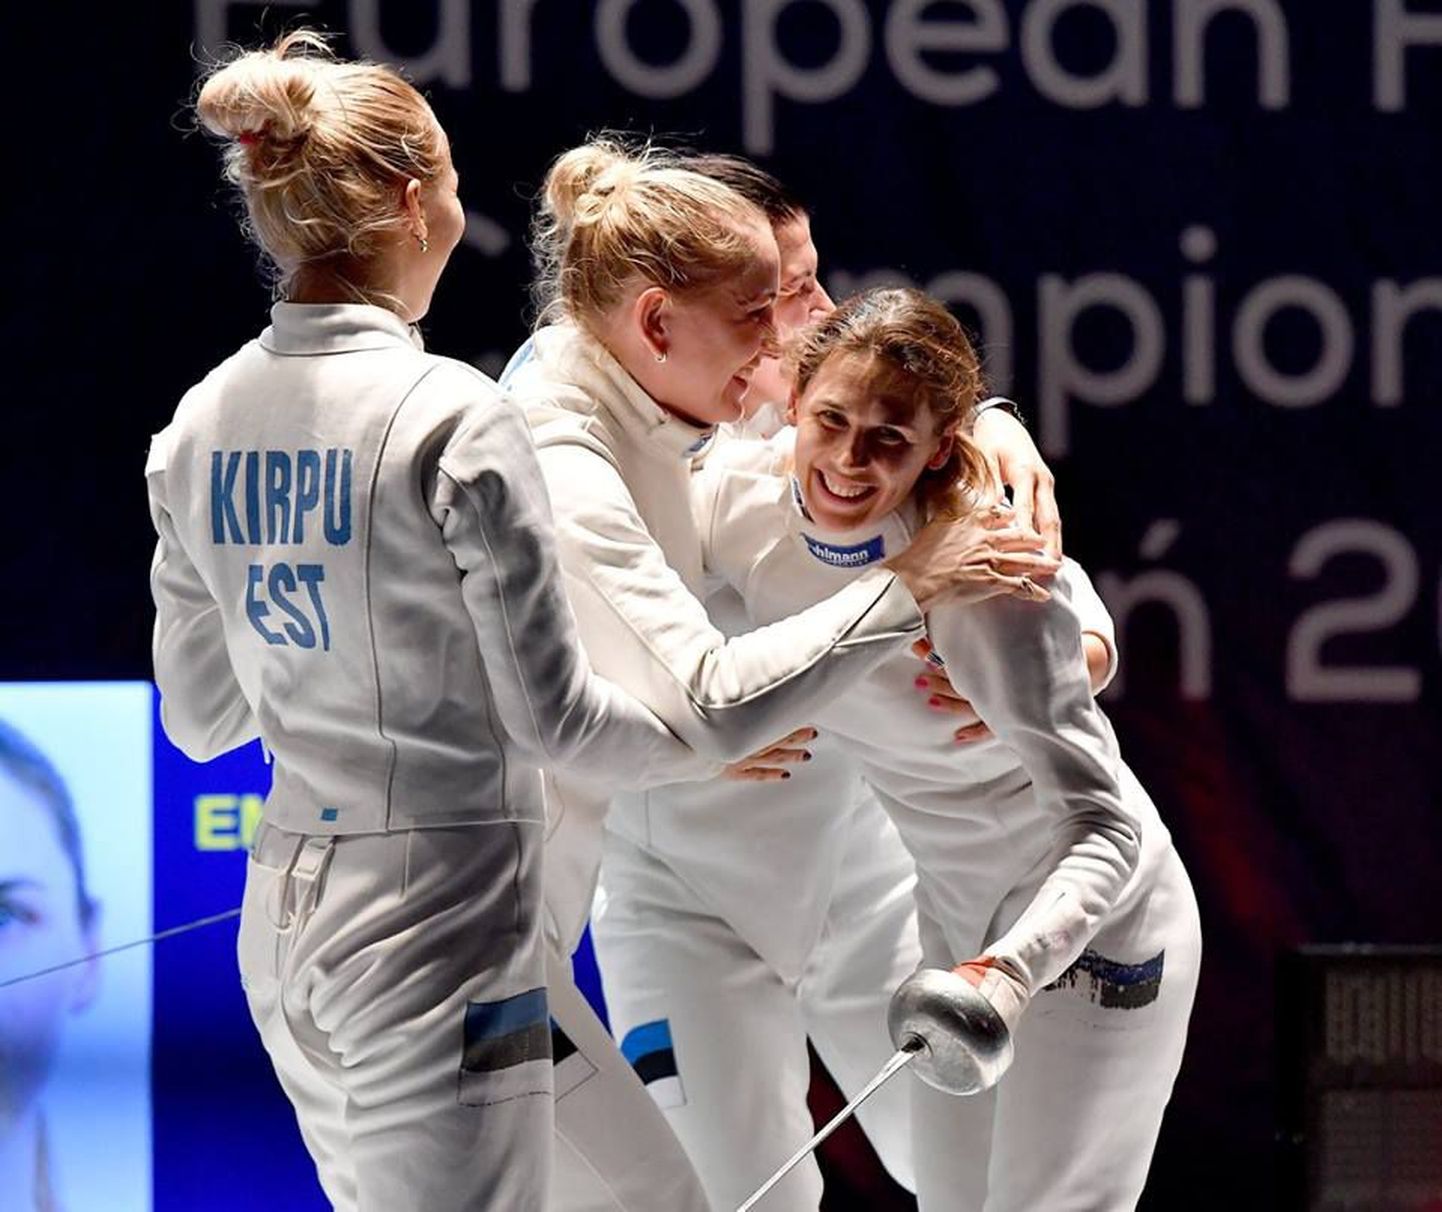 Koondisekaaslased Erika Kirpu (vasakult), Kristina Kuusk ja Julia Beljajeva õnnitlevad ankrunaisena Eesti naiskonna kuldmedalile vedanud Irina Embrichit (paremal)